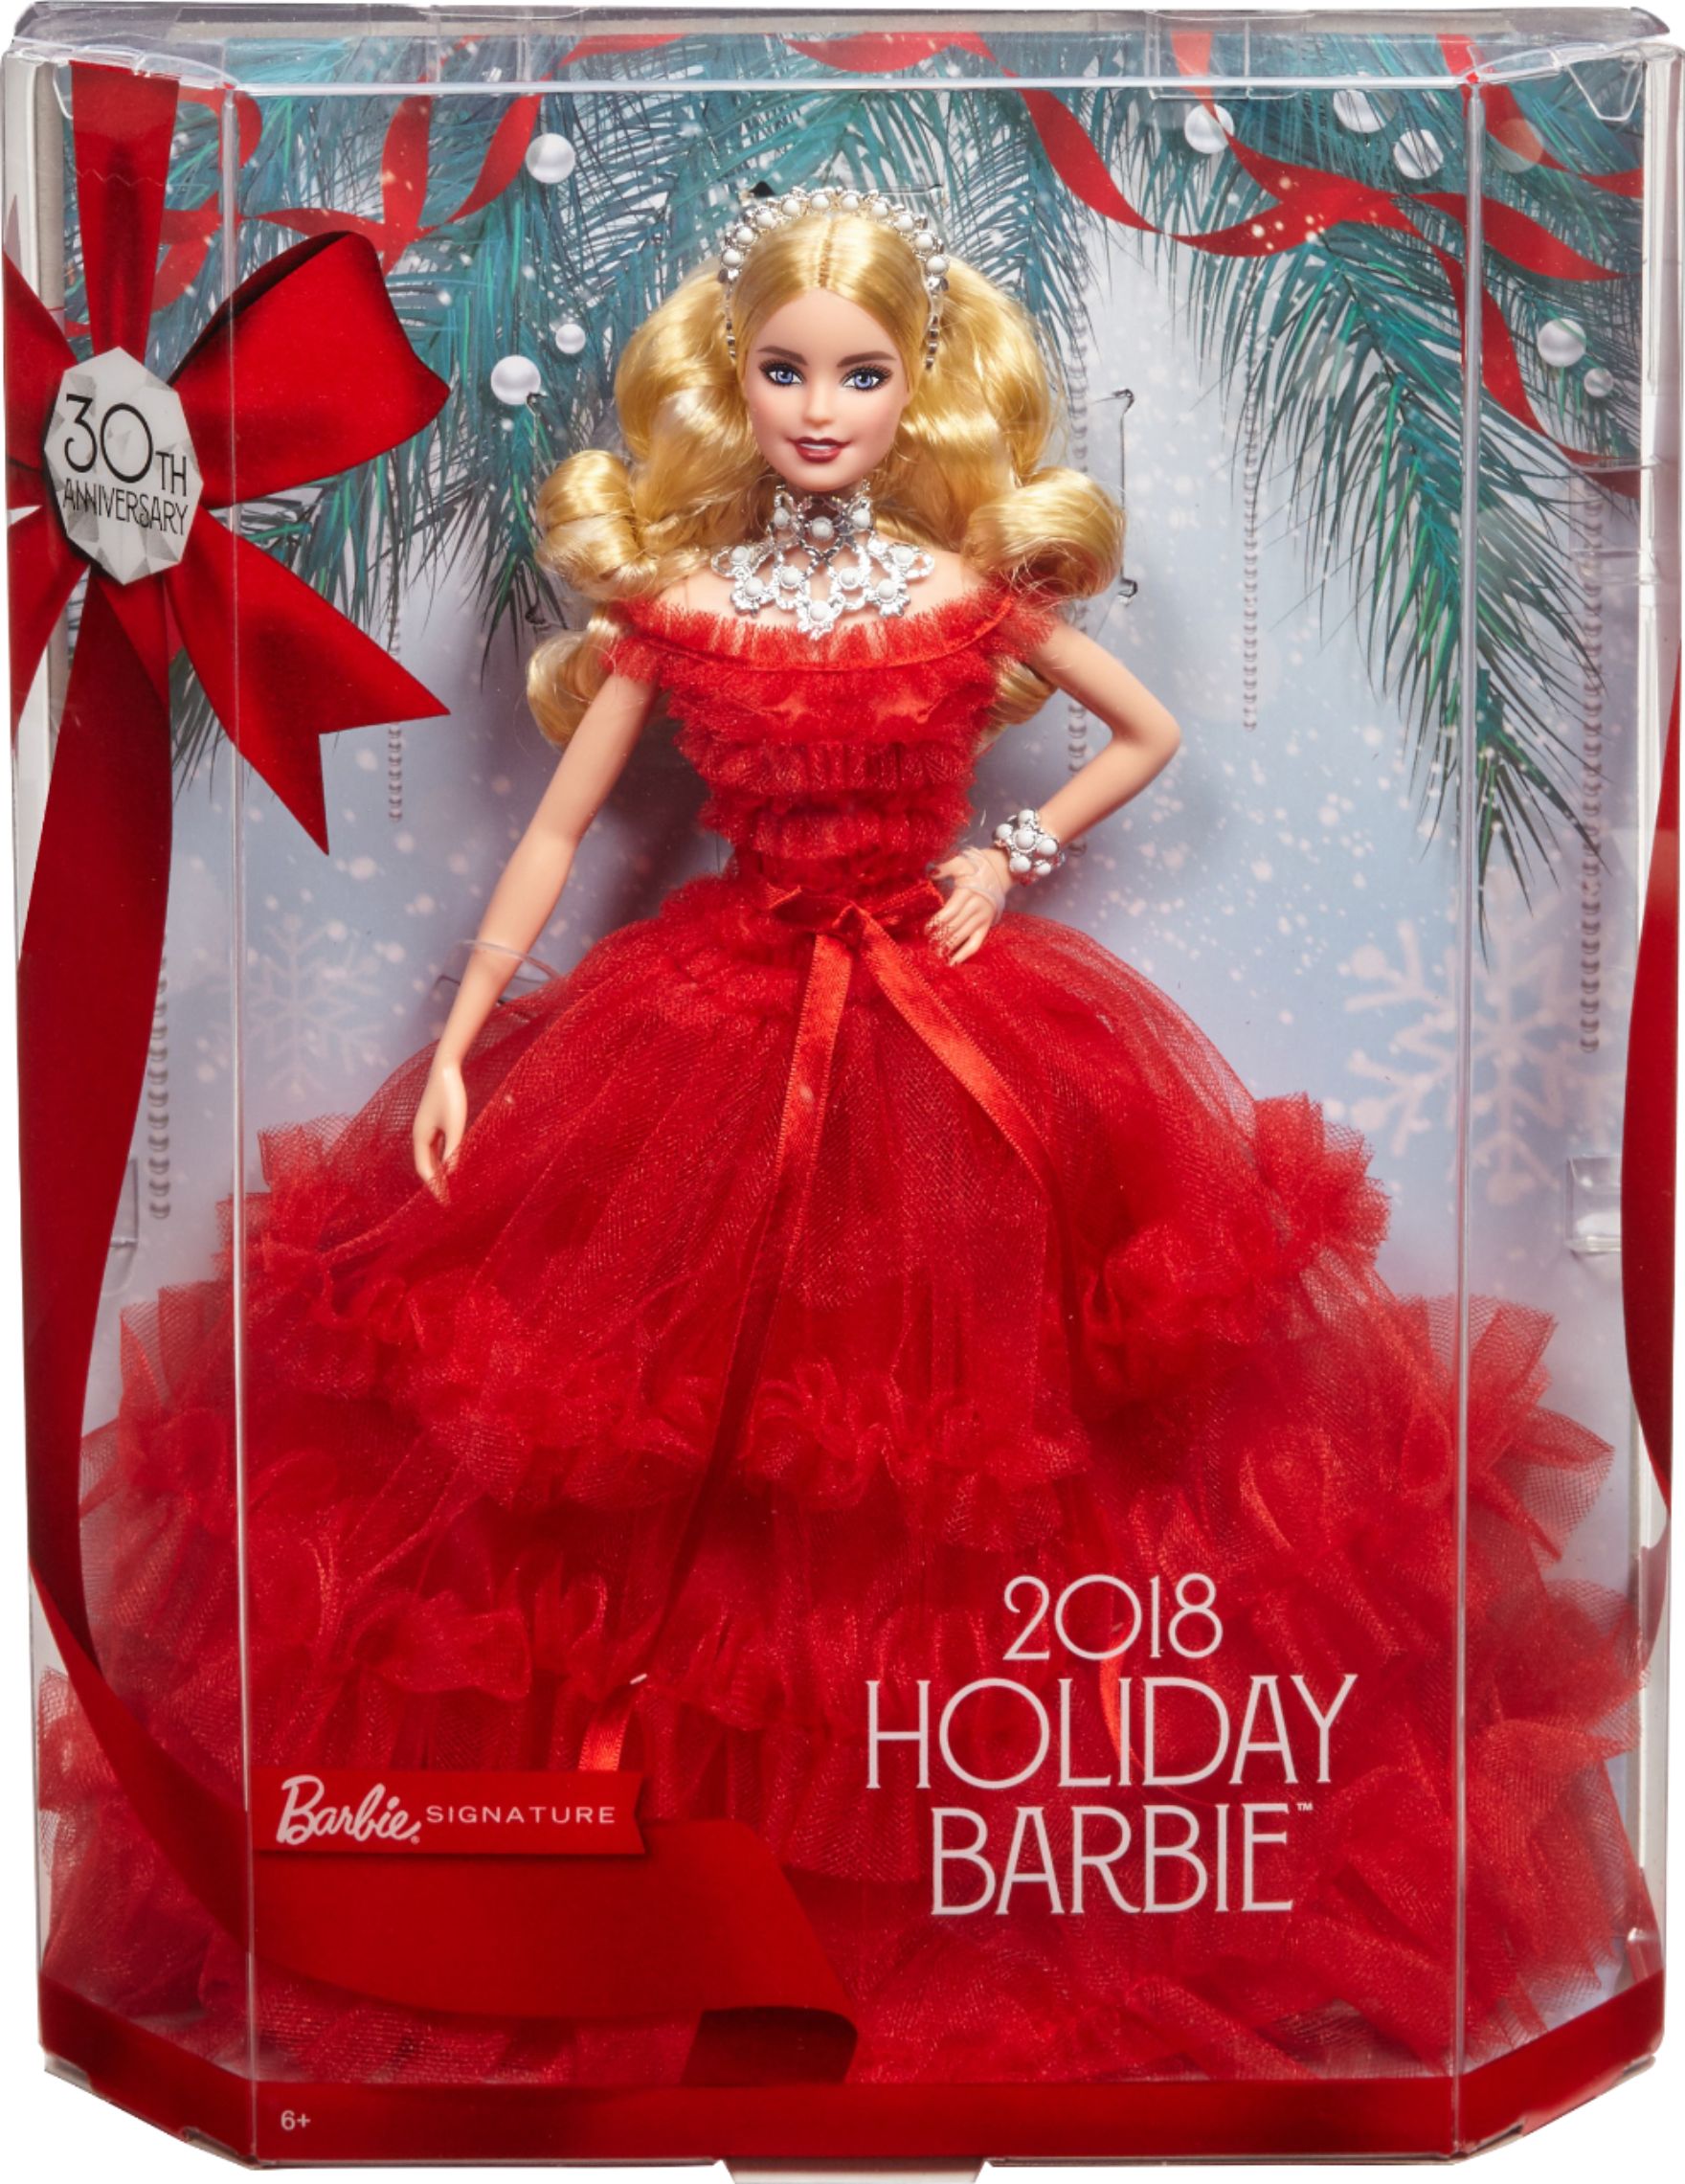 barbie in 2018